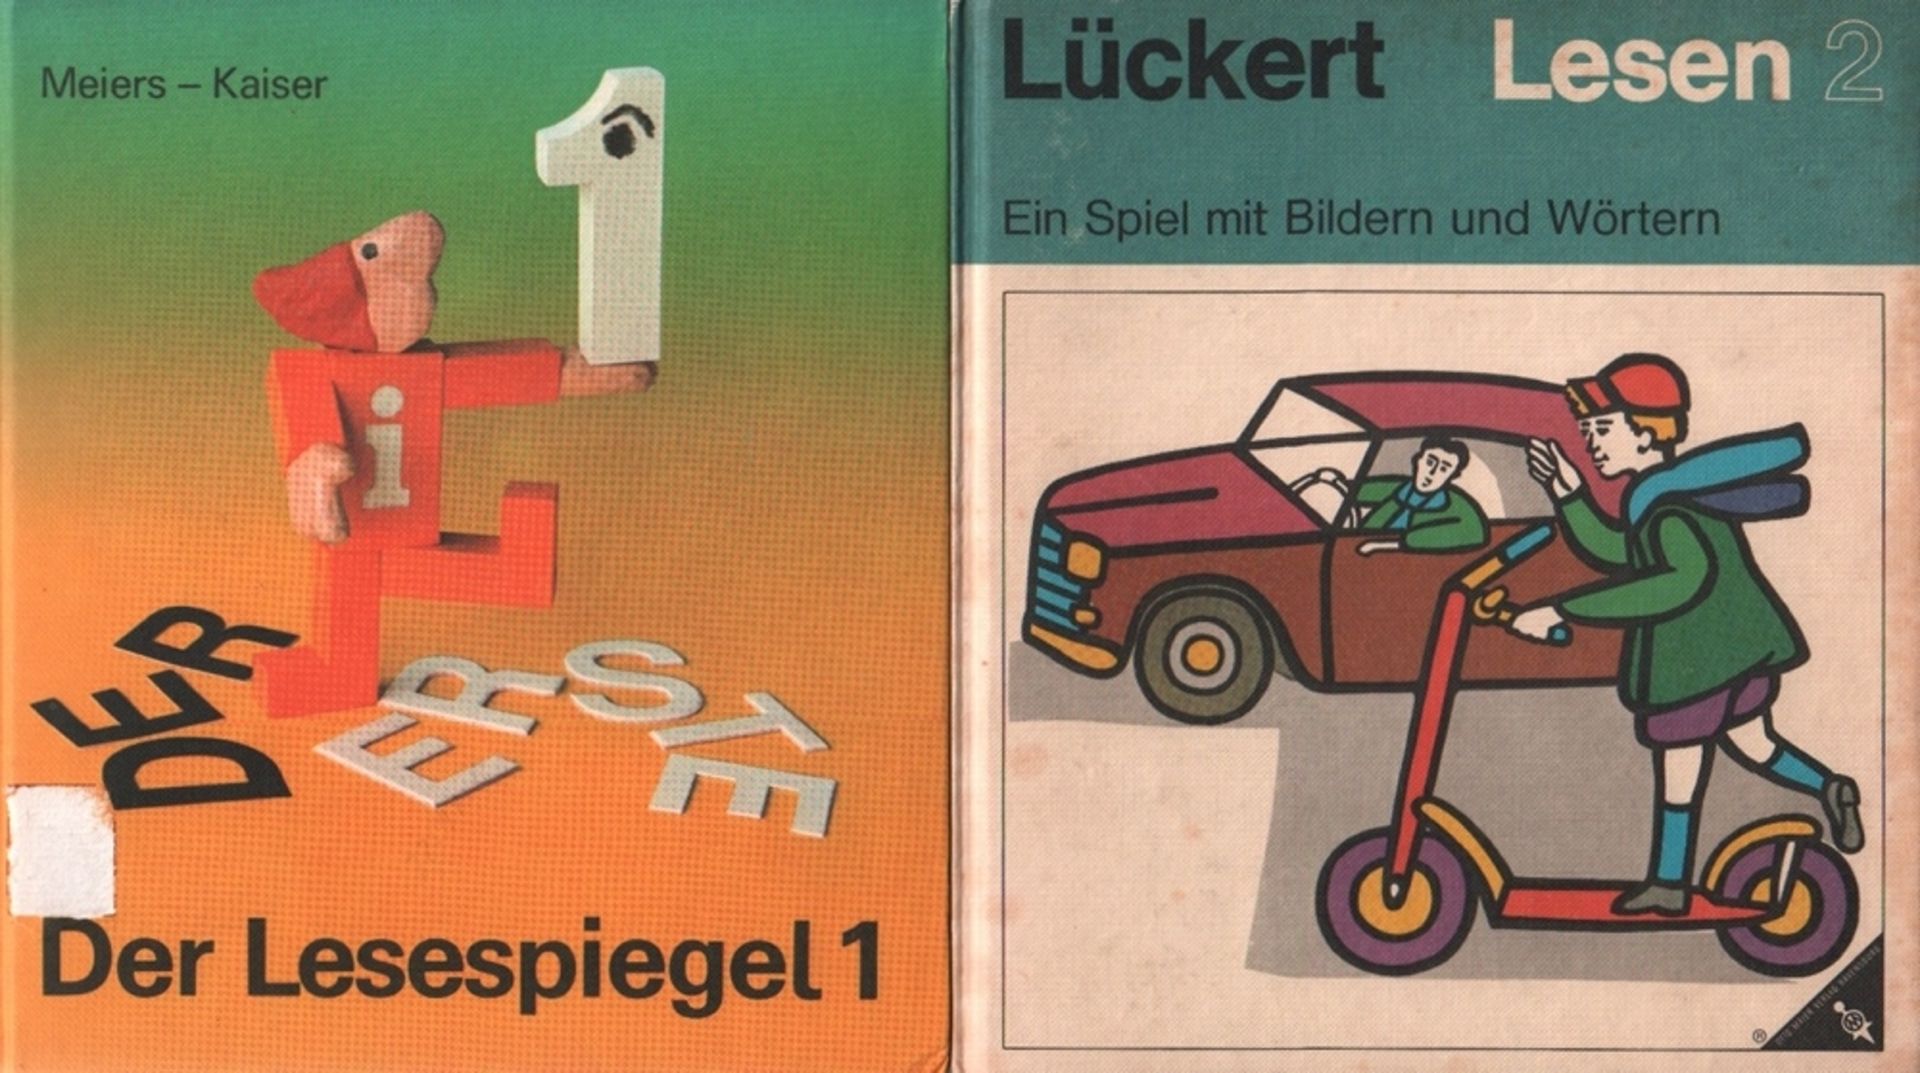 Lesebuch. Kaiser, Stephan. Der Lesespiegel. 1. Lesebuch. Stuttgart, Klett, 1982. 4°. Mit bunten